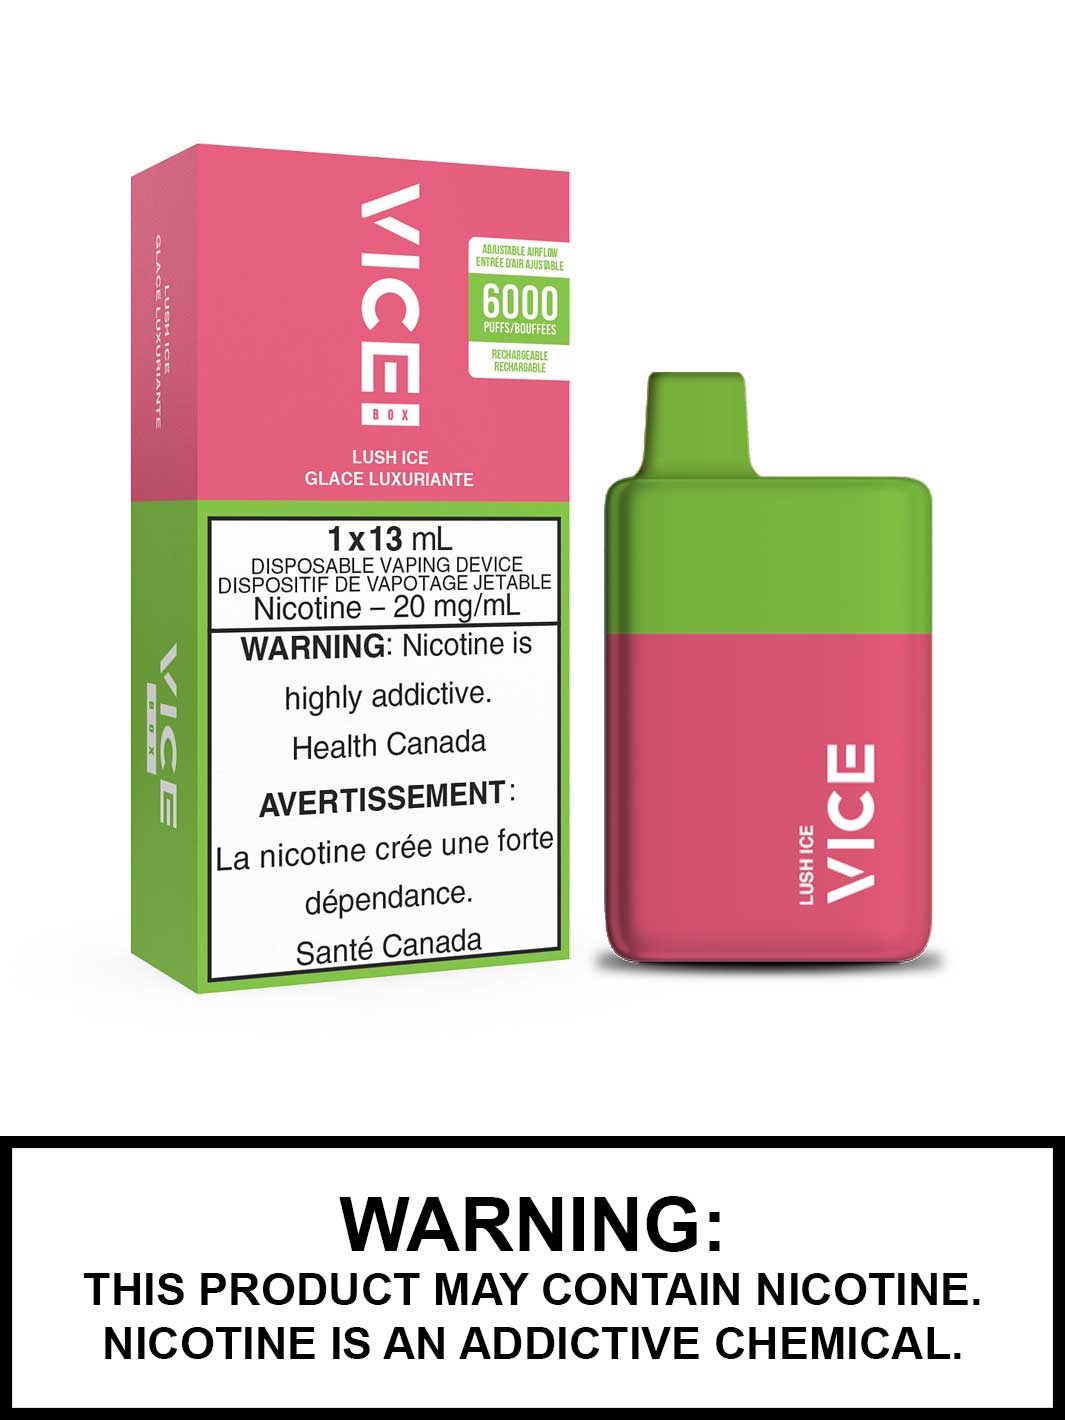 Vice Vape Lush Ice Vice Box Disposable Vape Canada, Vape360